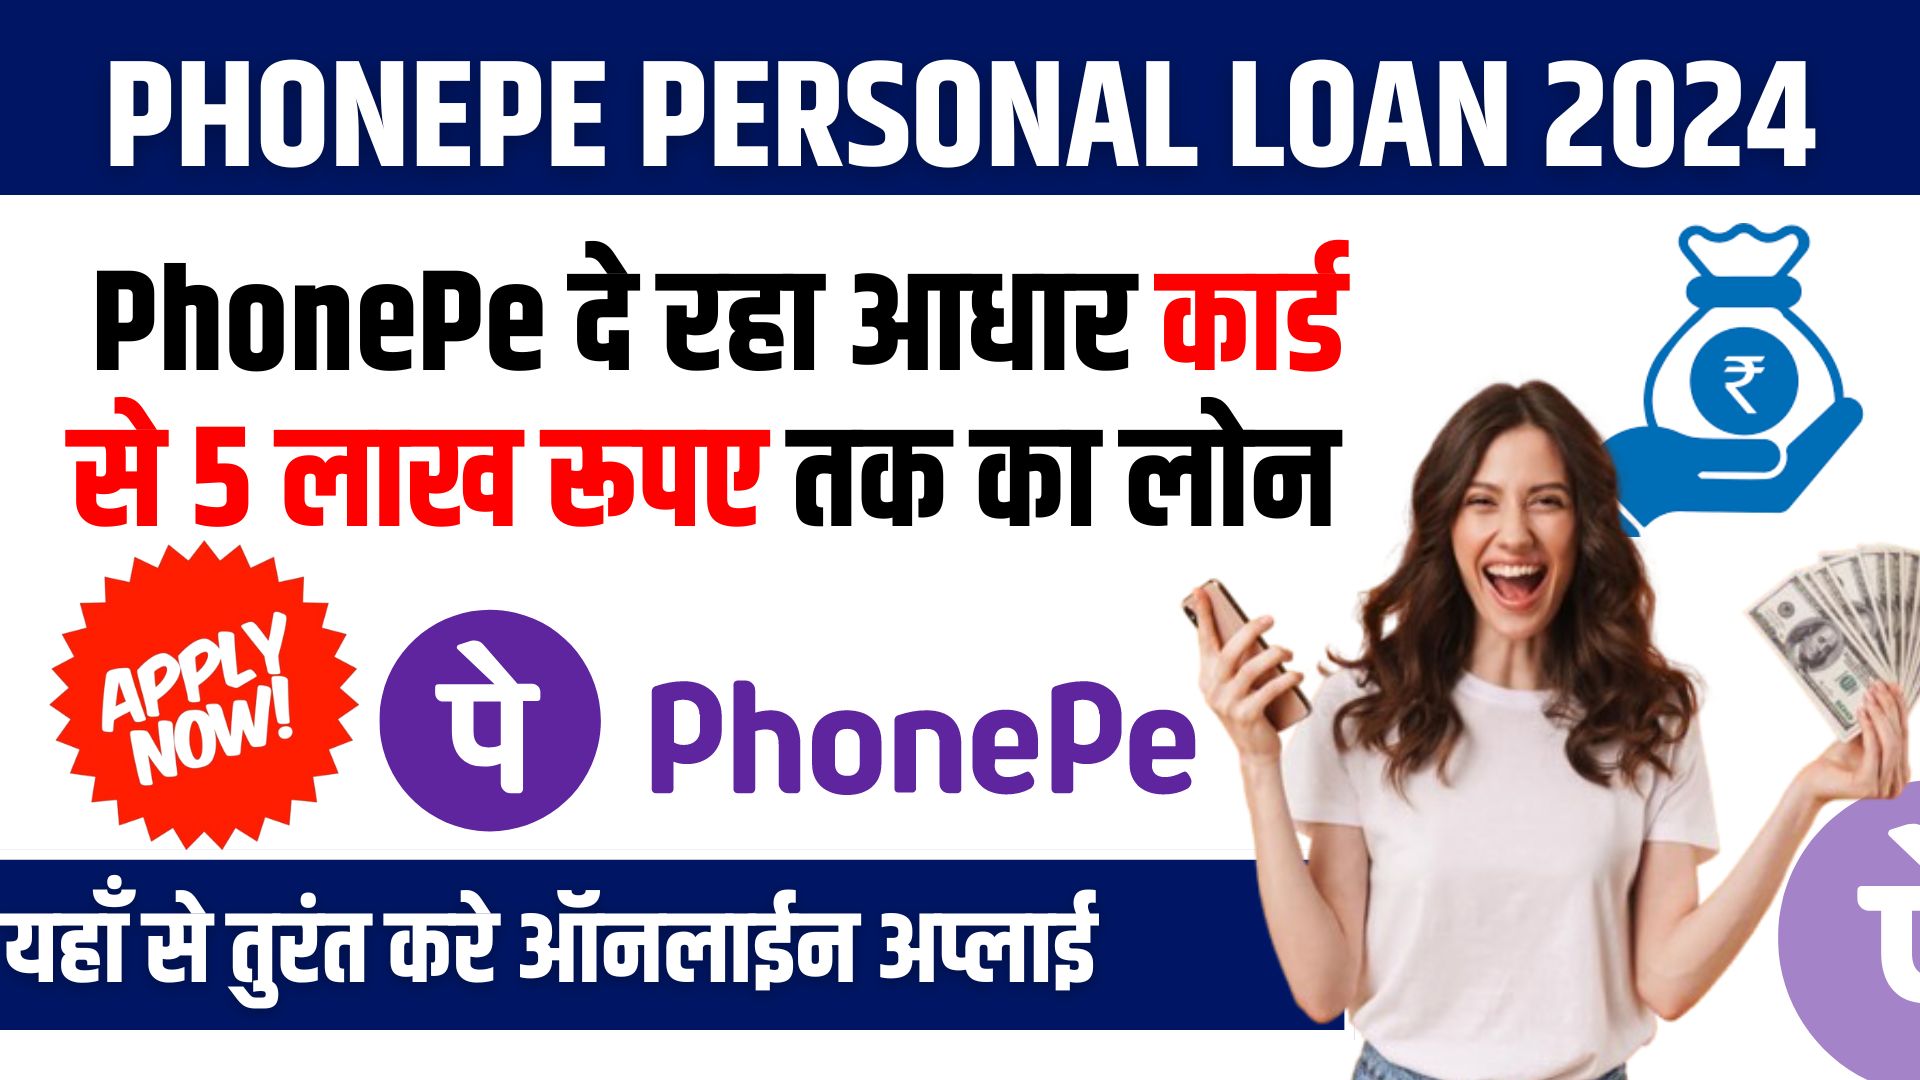 PhonePe Personal Loan